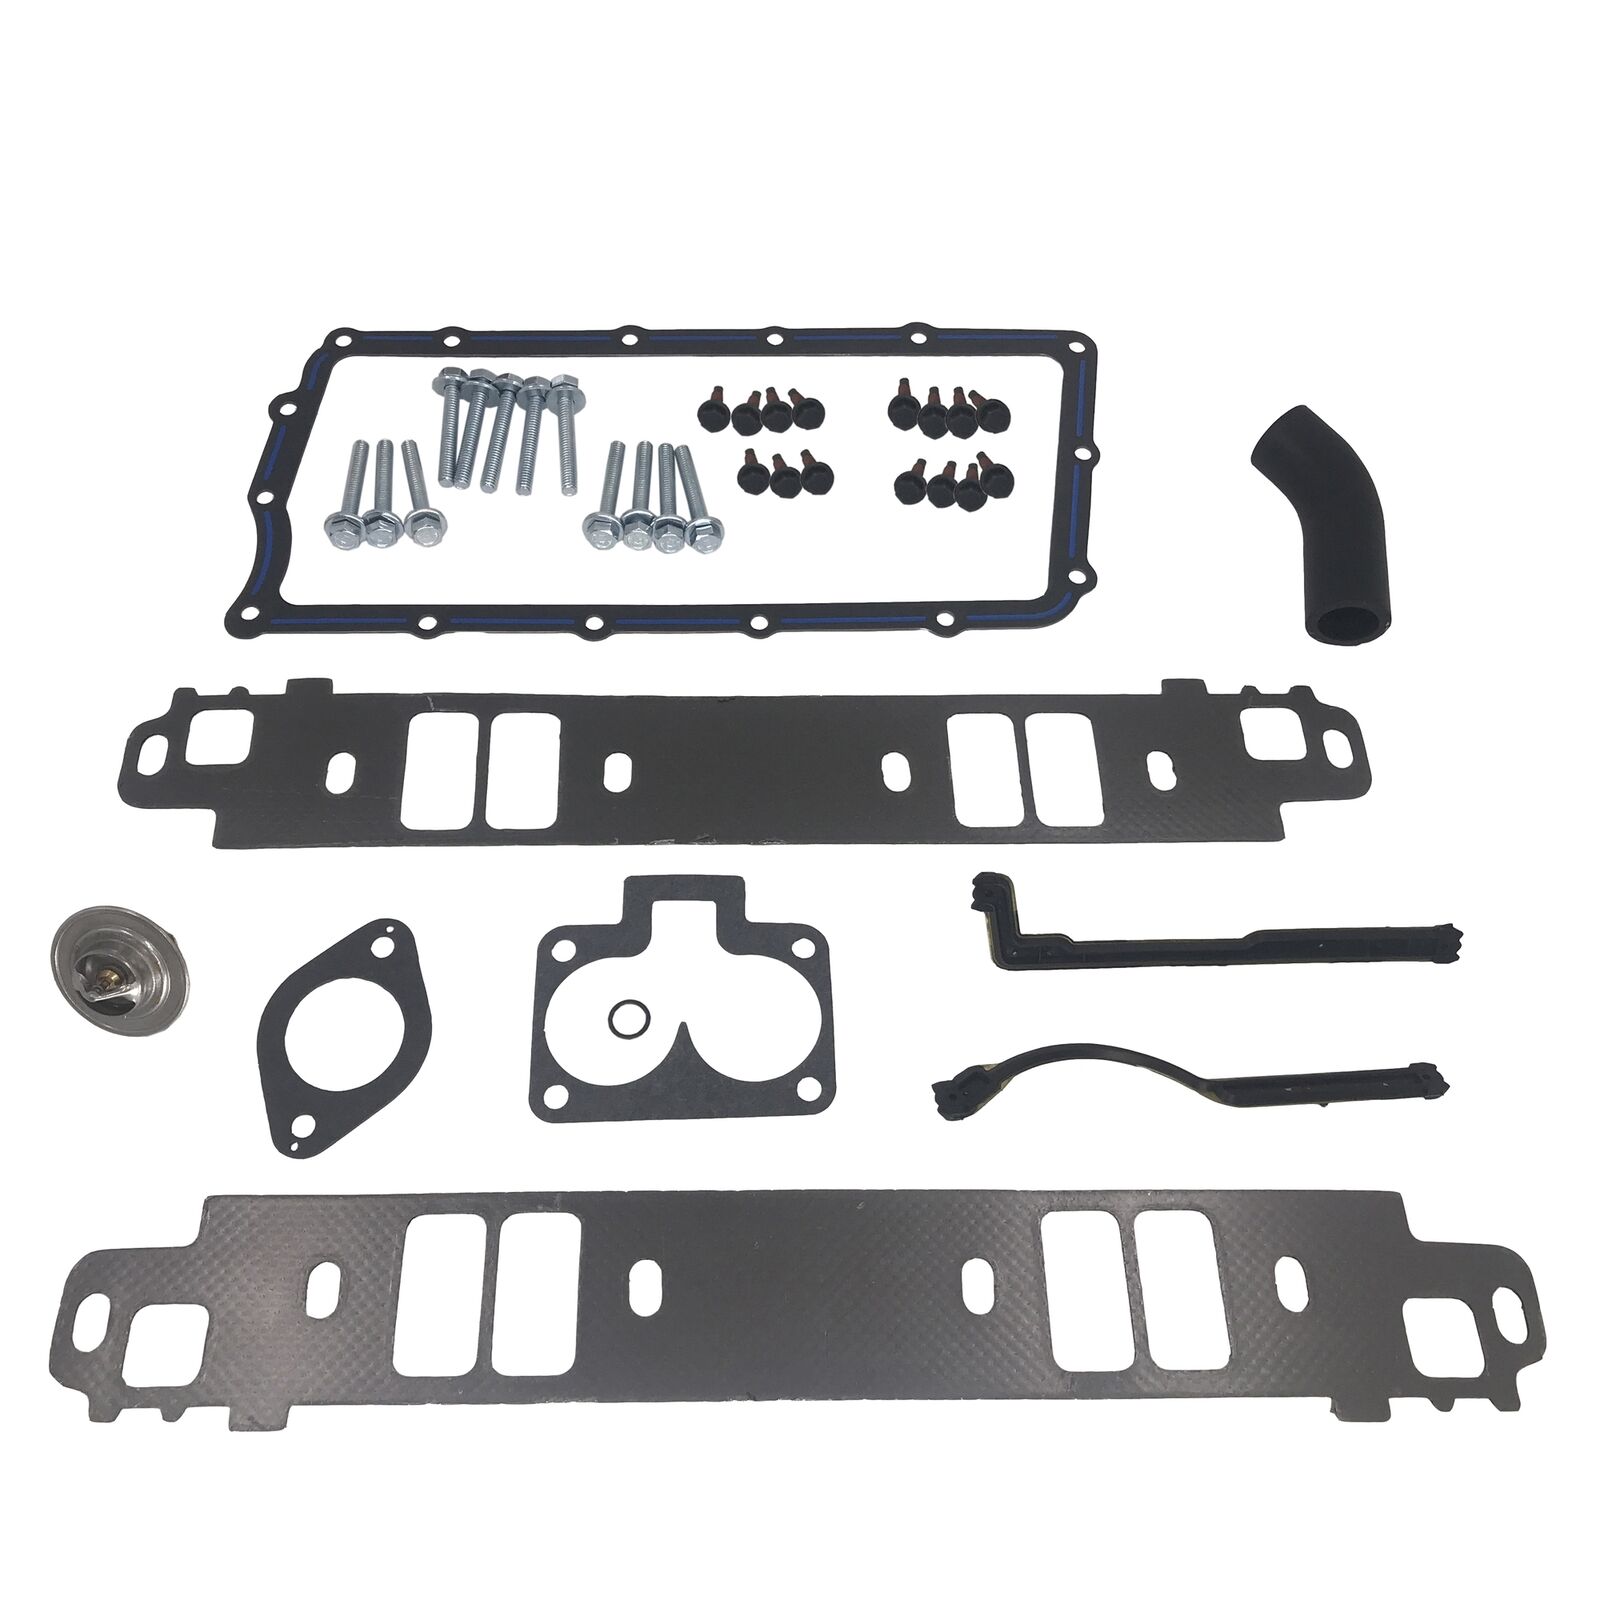 Intake Manifold Gasket Kit & Thermostat 615310 For Dodge Ram 1500 Durango 5.9L